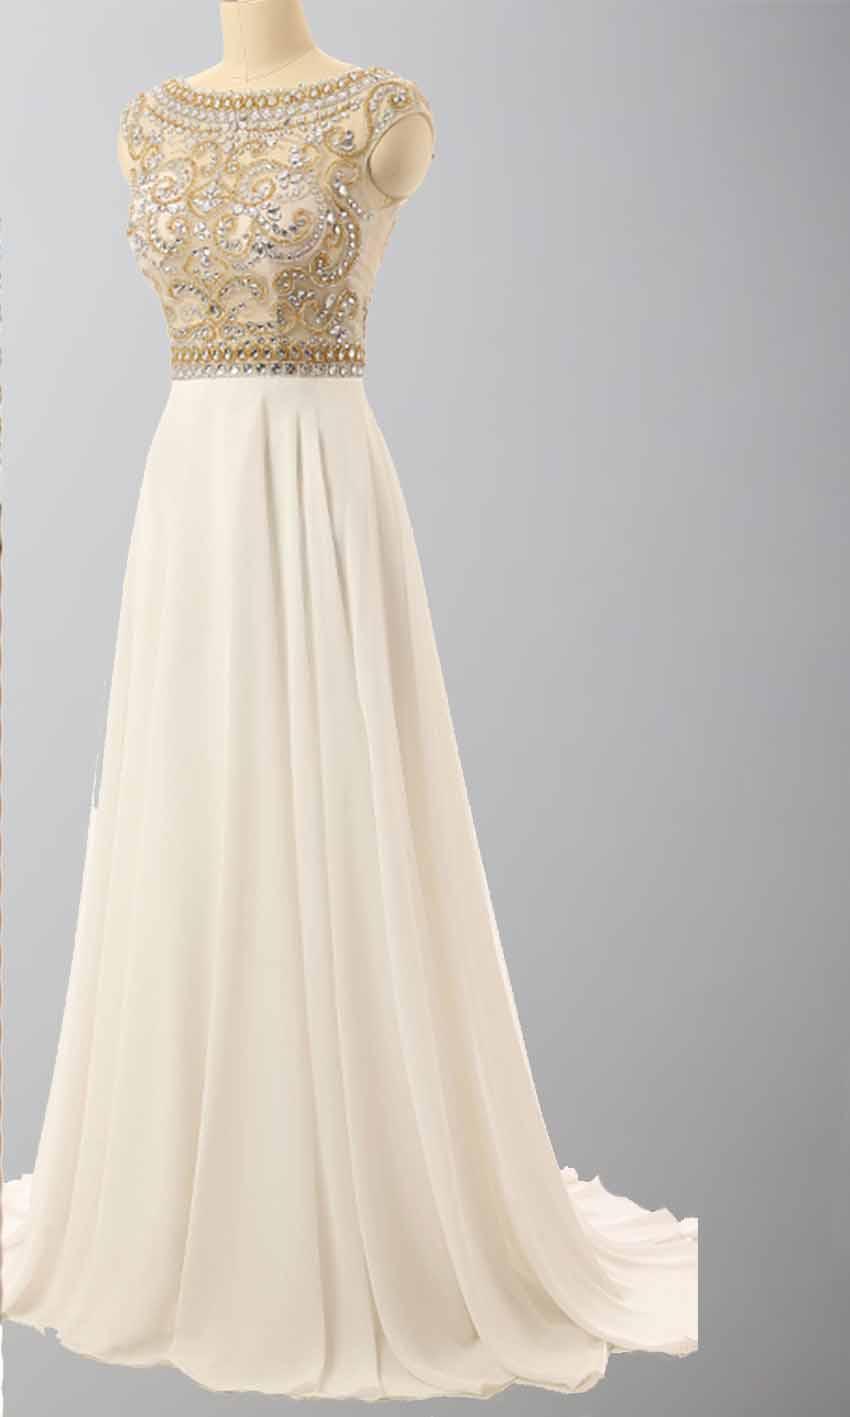 زفاف - Delicate Prom Dresses Long with Jeweled Sheer Top KSP449